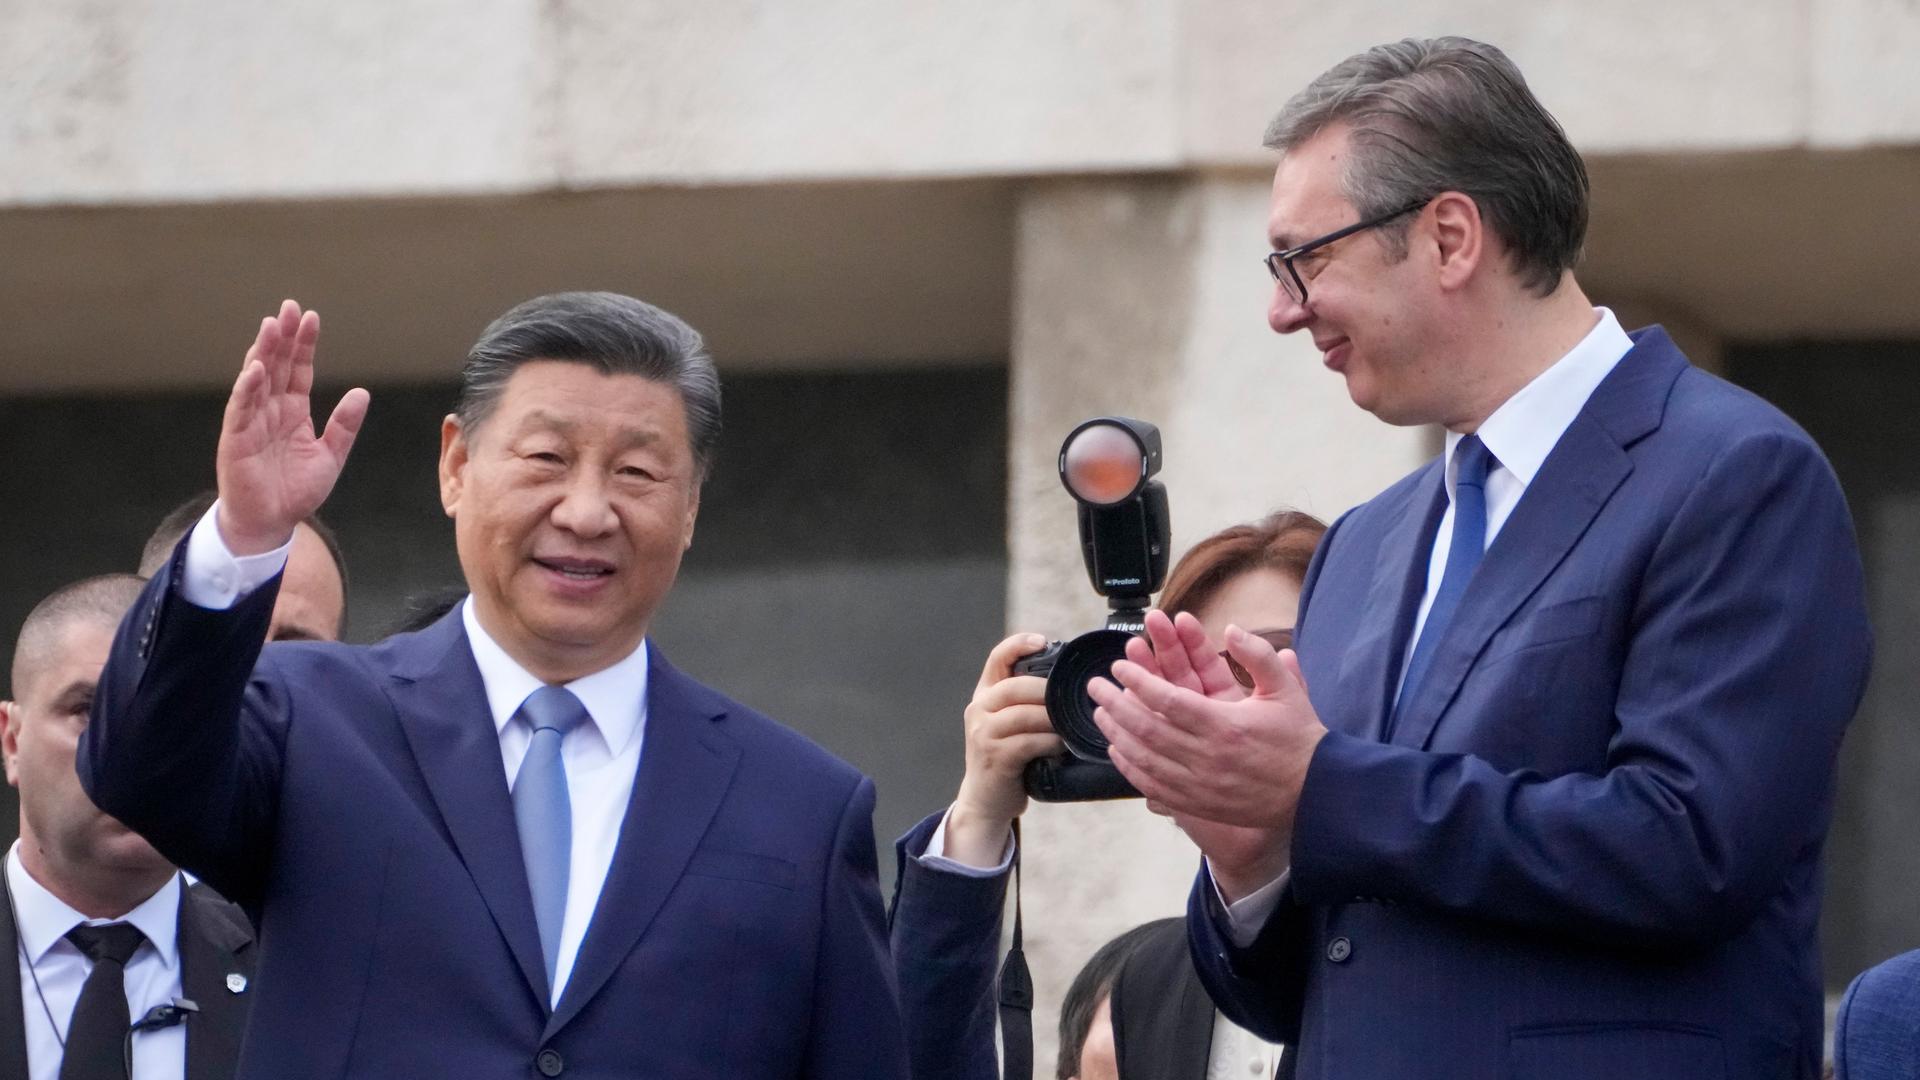 Der chinesische Präsident Xi Jinping begrüßt den serbischen Präsidenten Vucic. Xi grüßt mit erhobener Hand die Menge.